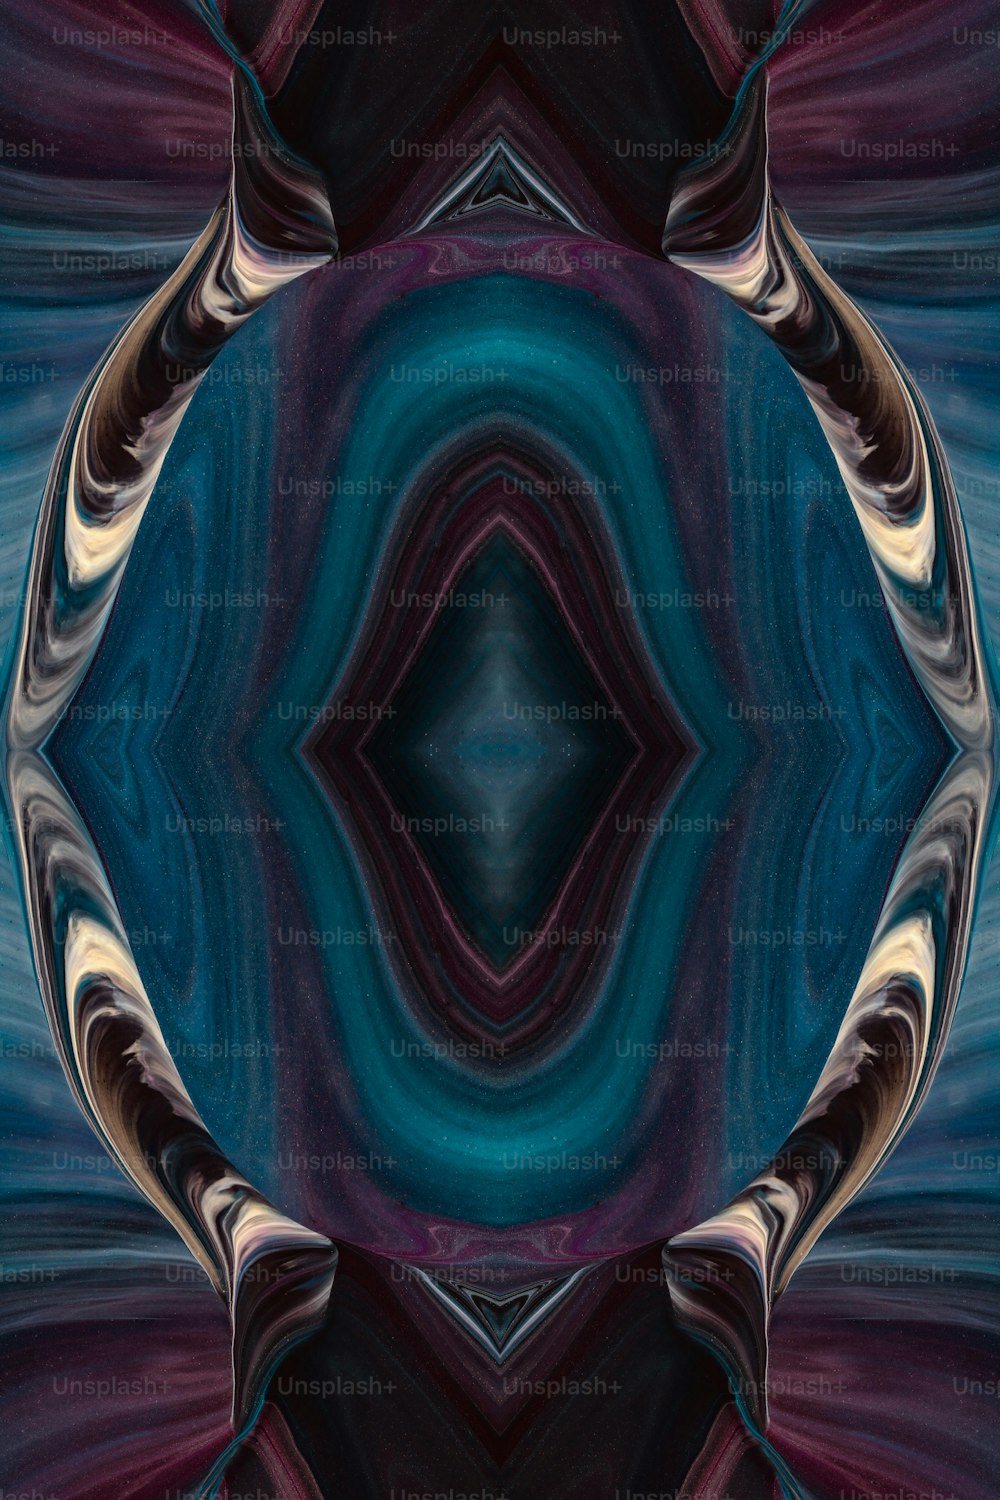 Una imagen generada por computadora de un fondo azul y púrpura